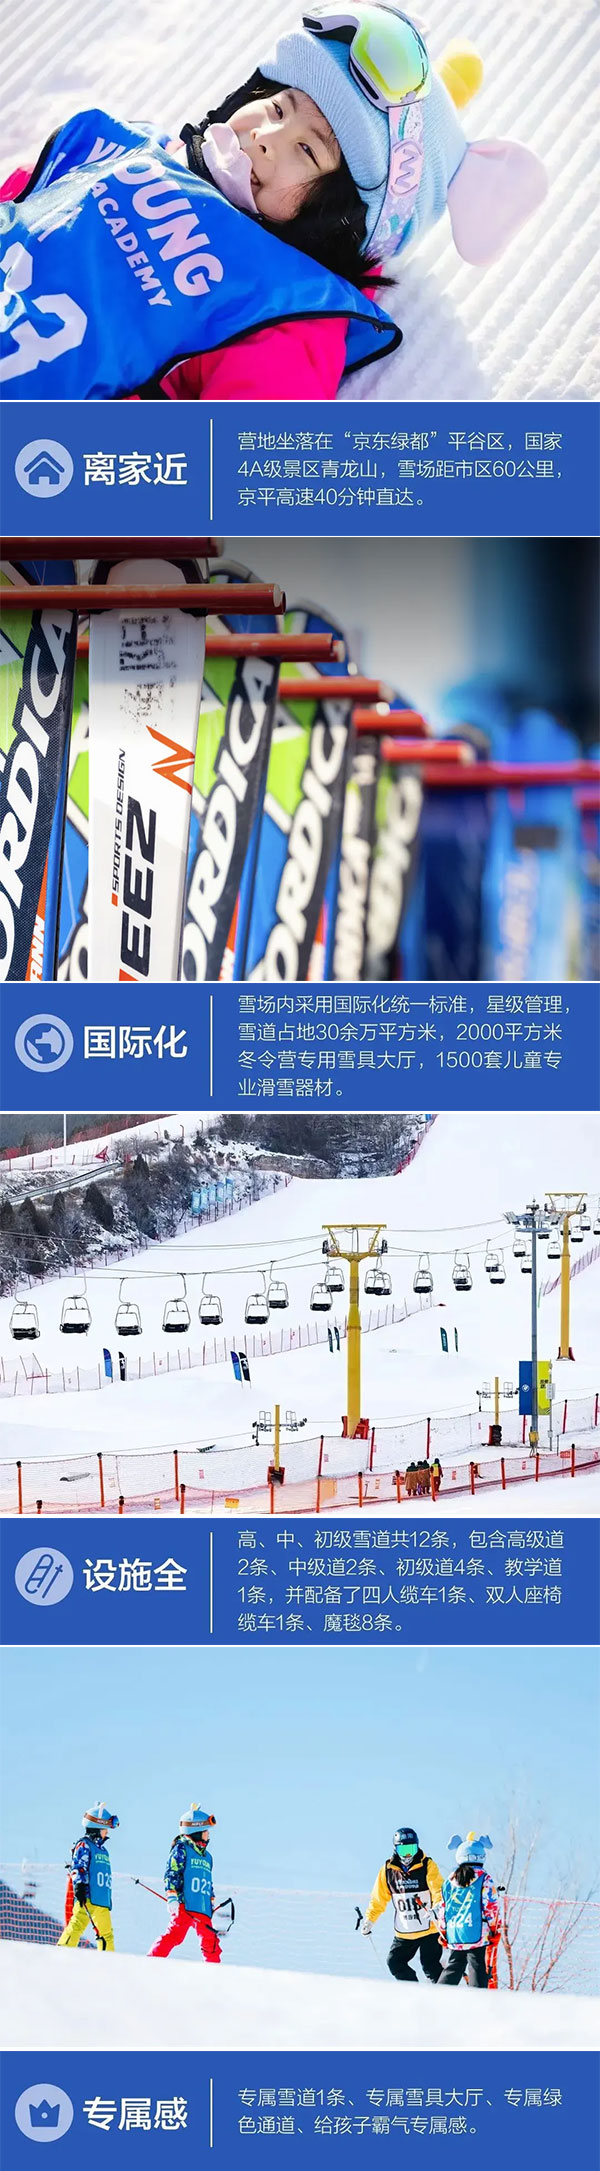 北京滑雪体验冬令营